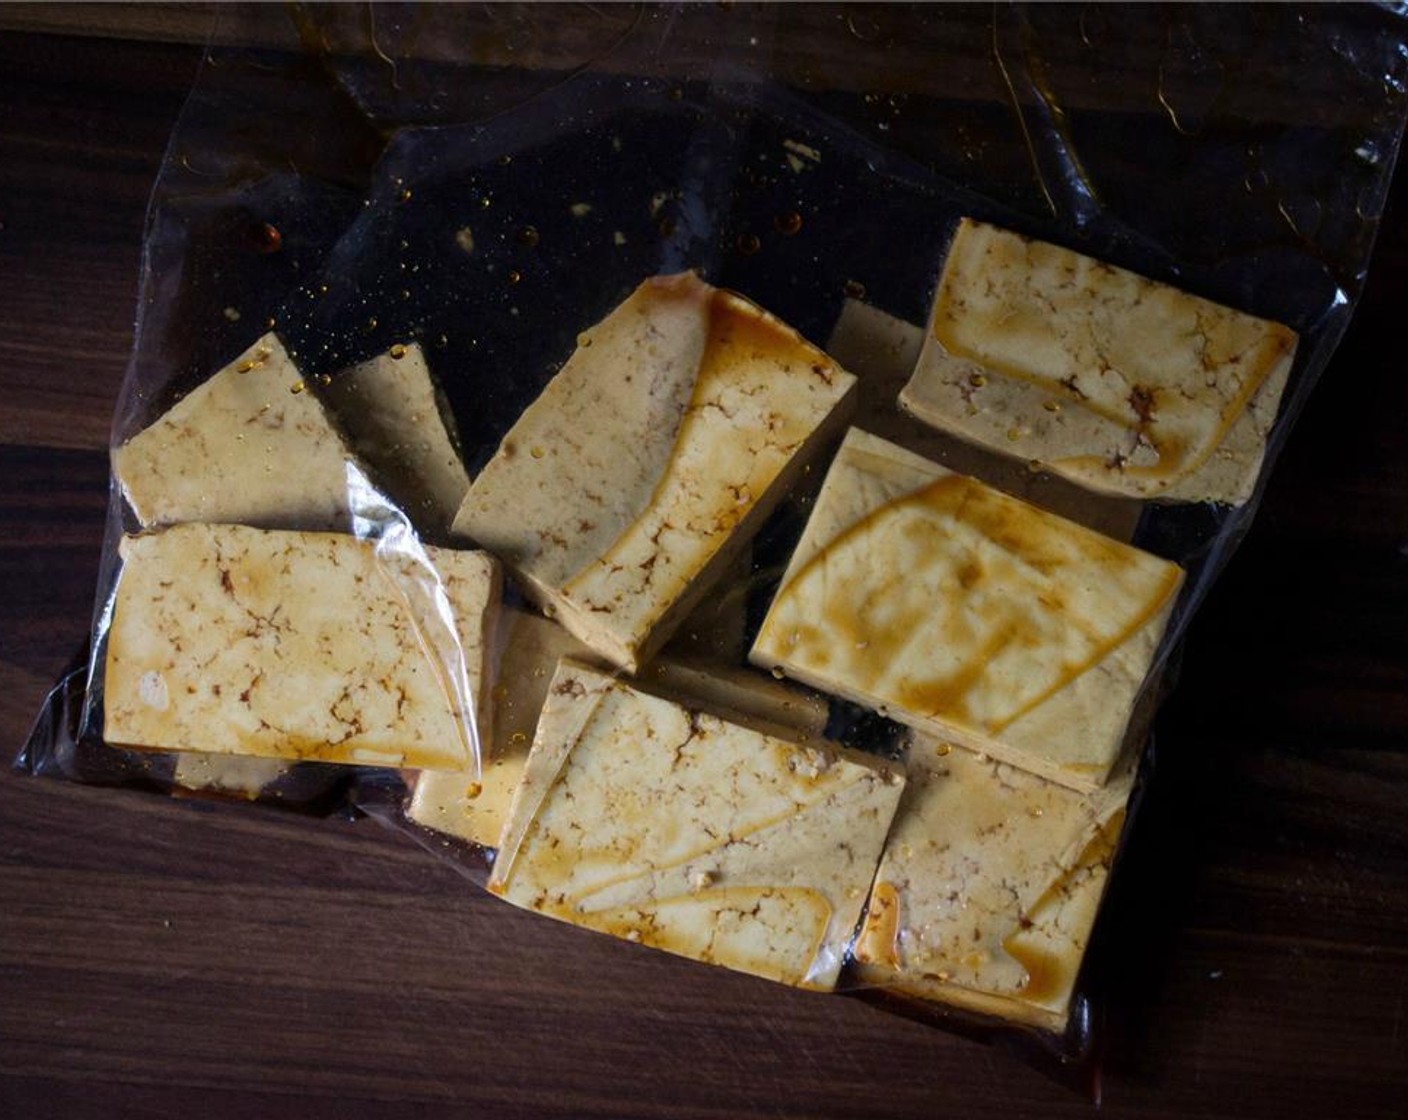 Schritt 3 Die Tofuscheiben hinzufügen, den Beutel verschliessen und den Tofu vorsichtig bewegen, um ihn zu überziehen. Mindestens 30 Minuten marinieren lassen, dabei den Beutel regelmässig wenden, damit der Tofu von allen Seiten bedeckt ist.